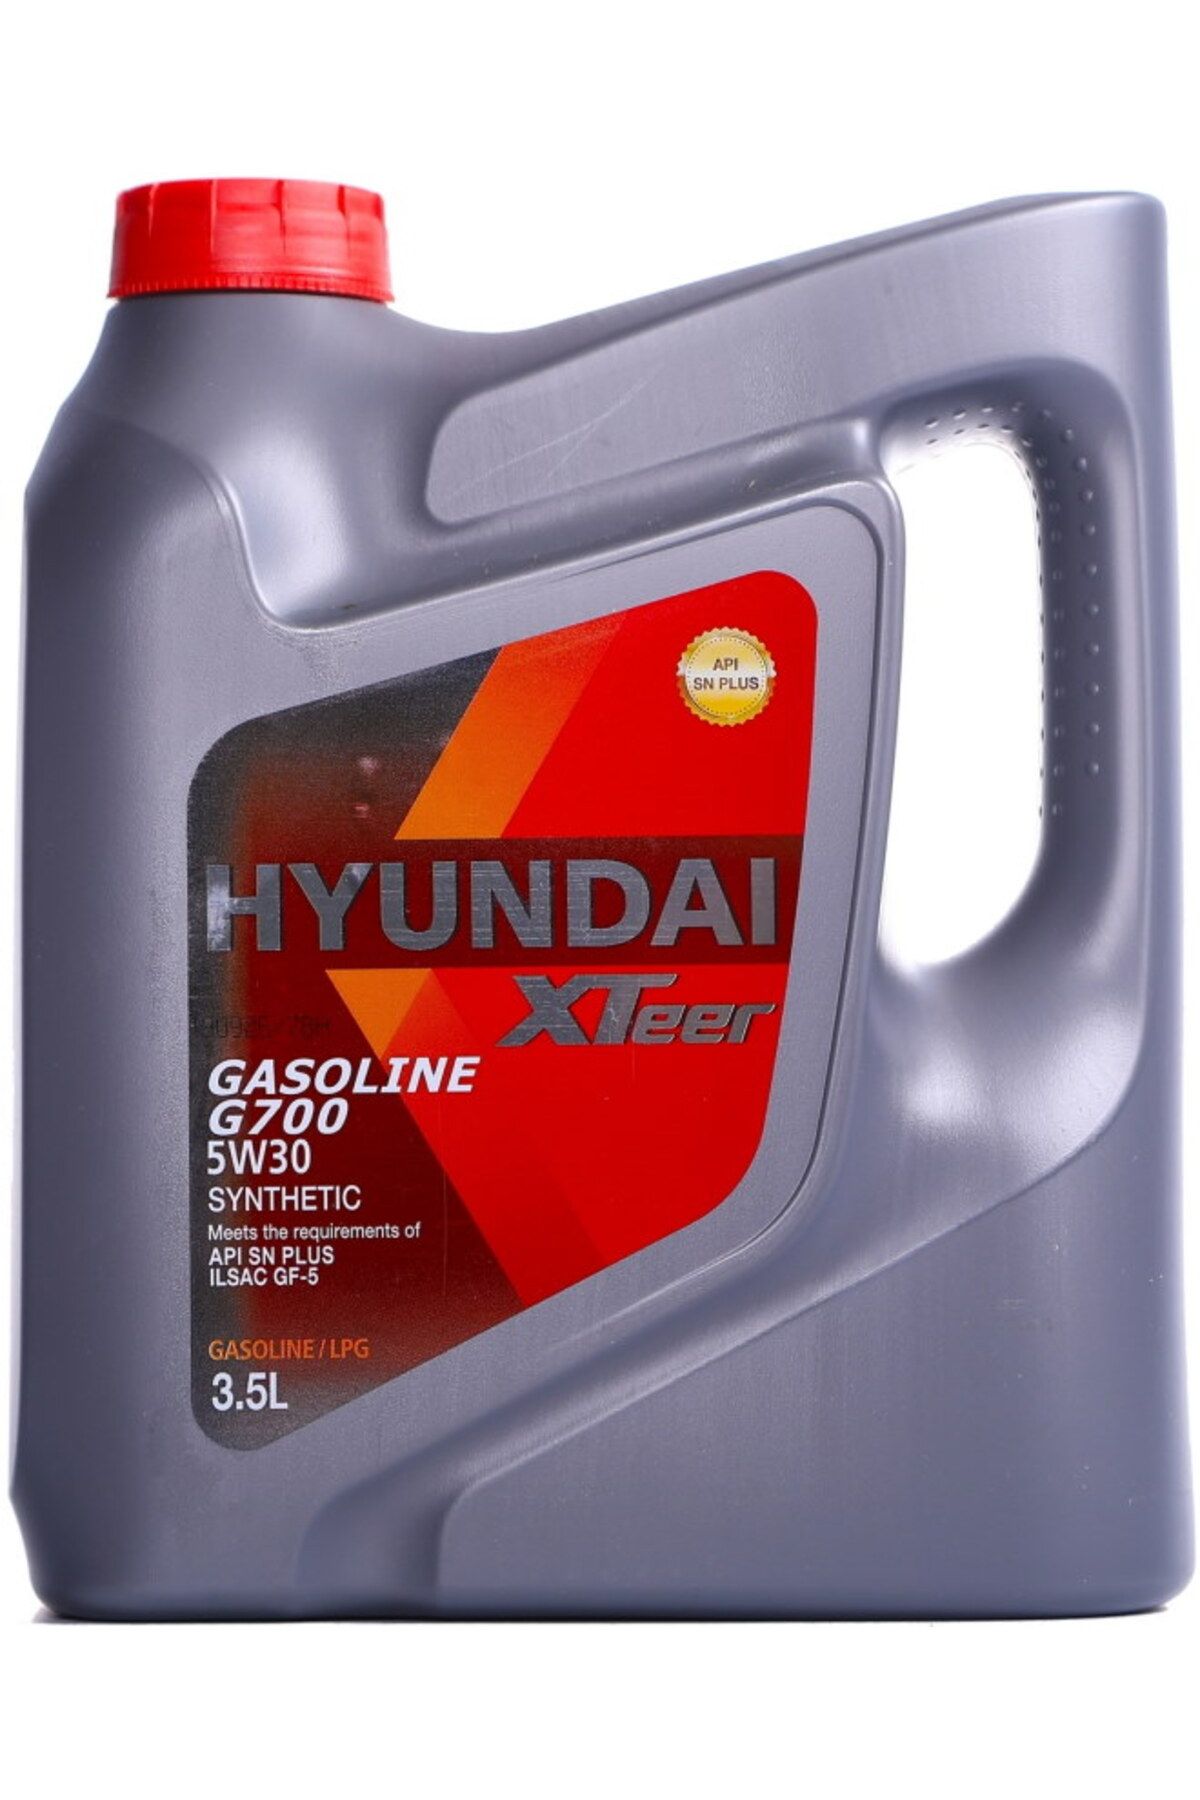 Икс тир масло. 1041002 Hyundai XTEER. Hyundai XTEER gasoline g700. Hyundai XTEER 5w30. Hyundai XTEER gasoline g700 5w-30.